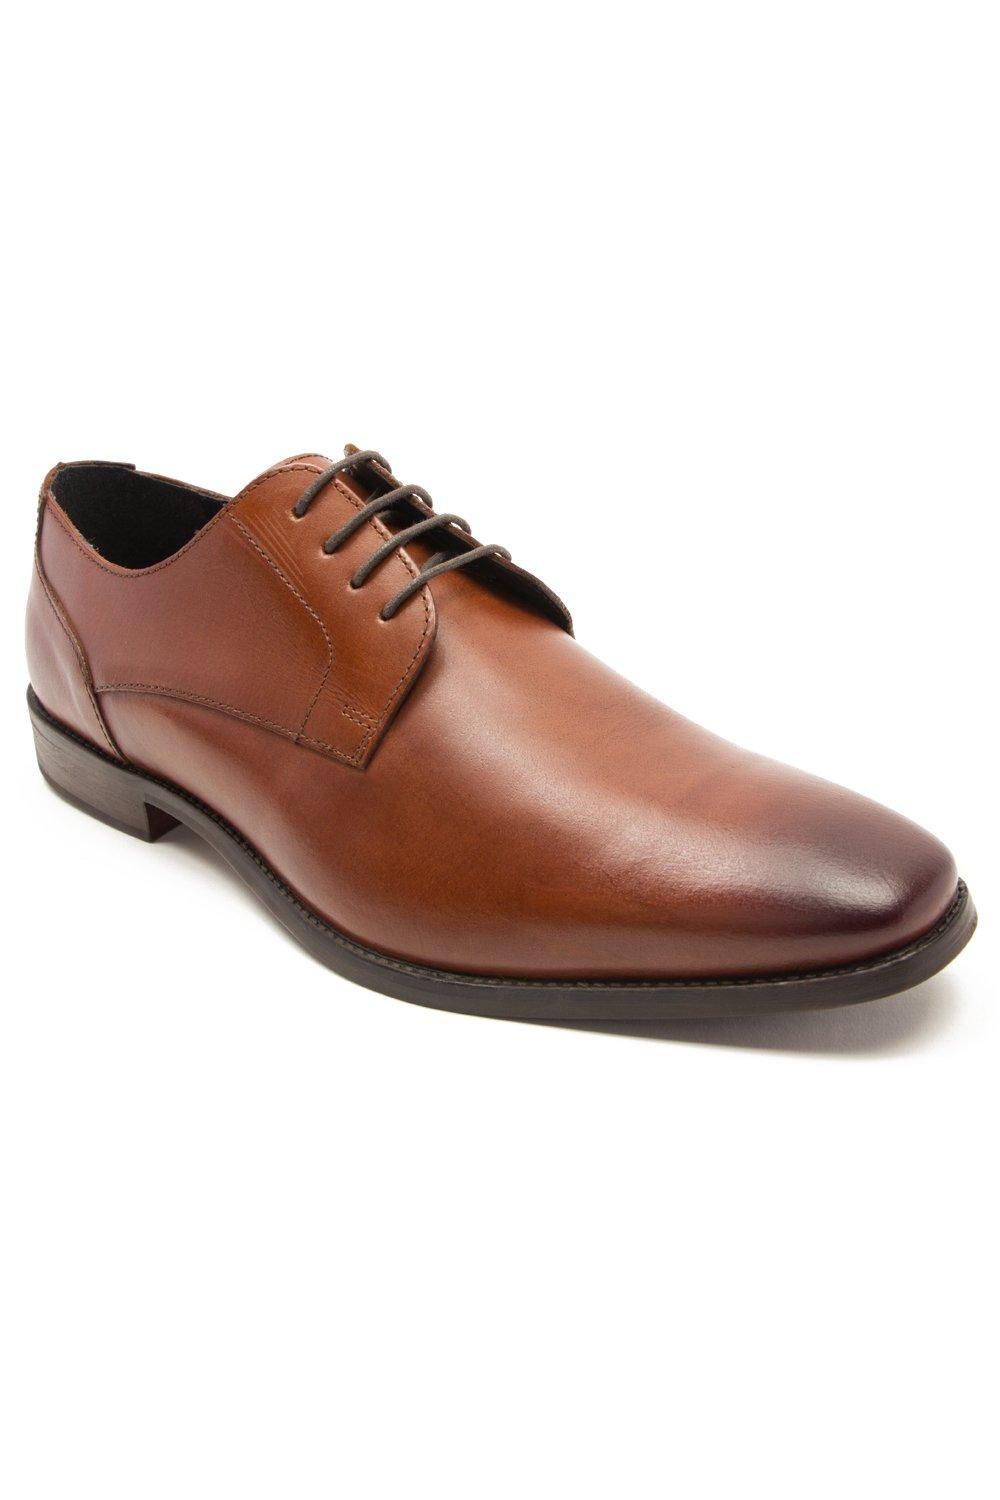 Формальные кожаные туфли дерби на шнуровке 'Falcon' Thomas Crick, коричневый мужские кожаные деловые туфли на шнуровке для офиса черный